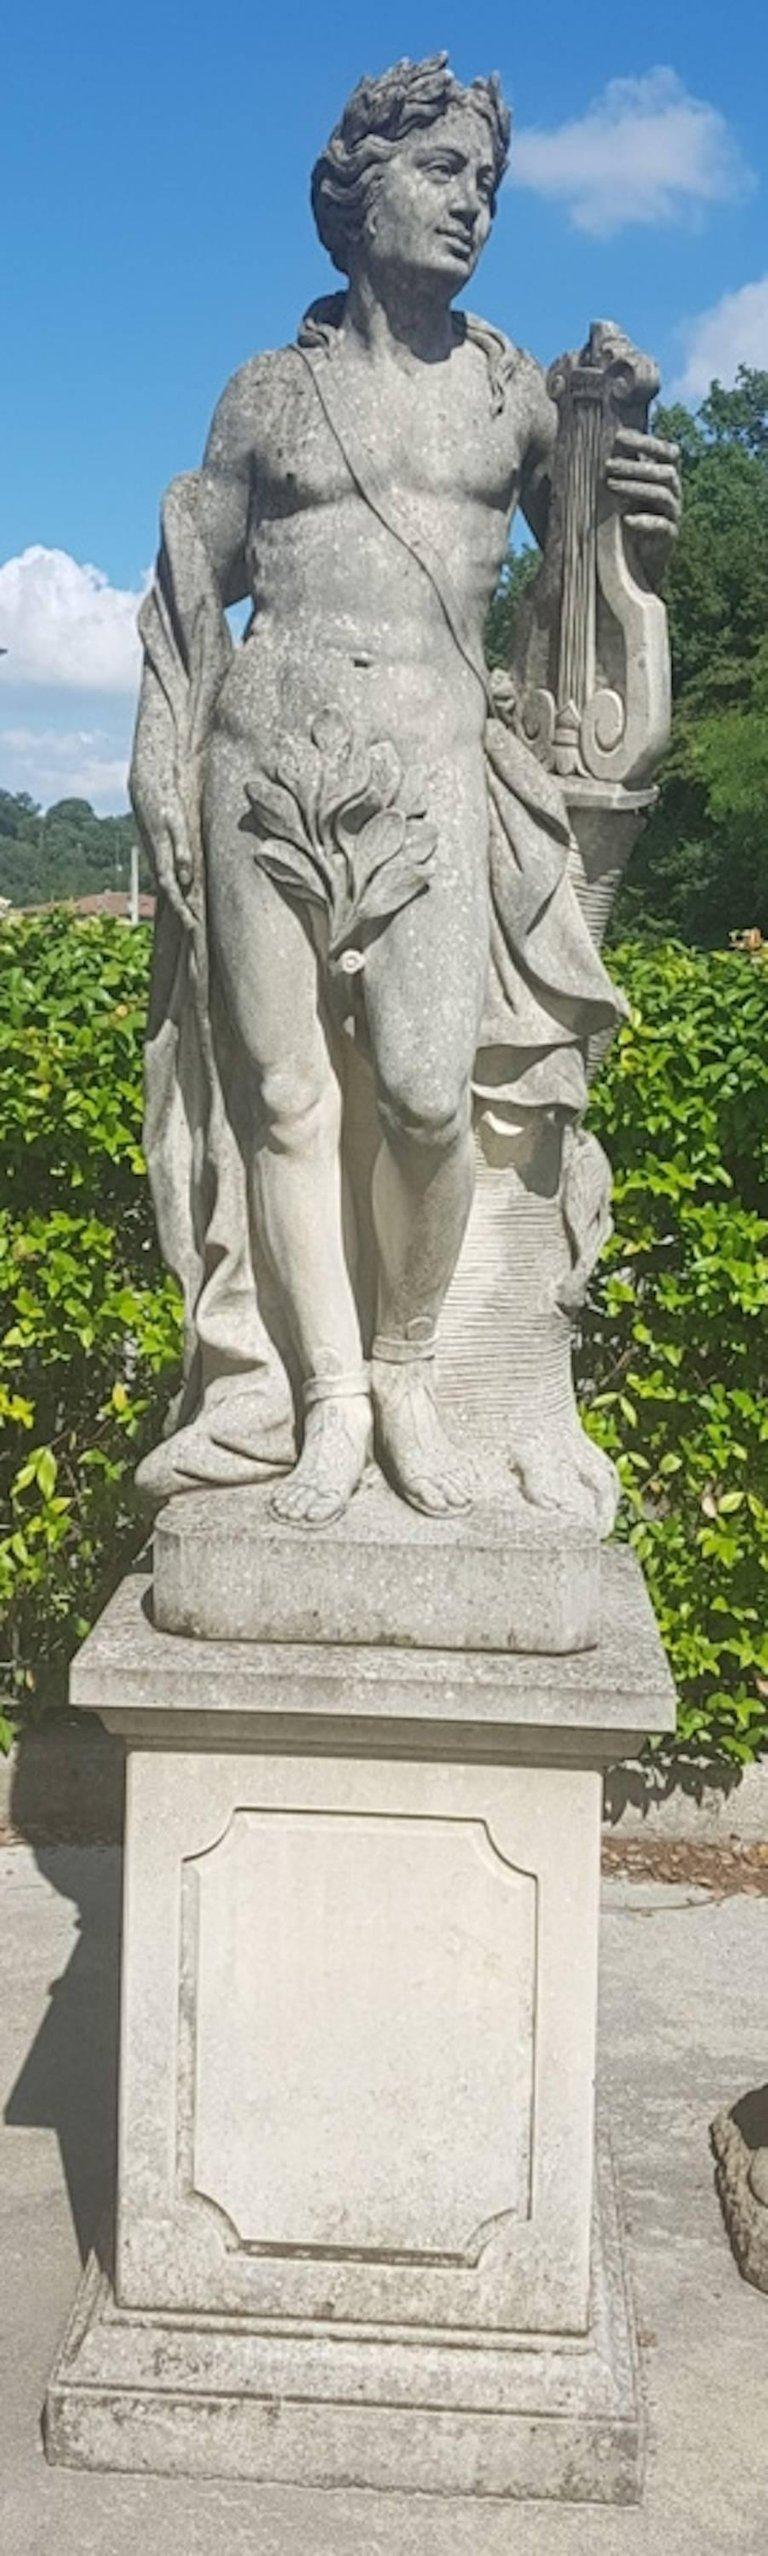 limestone garden statues